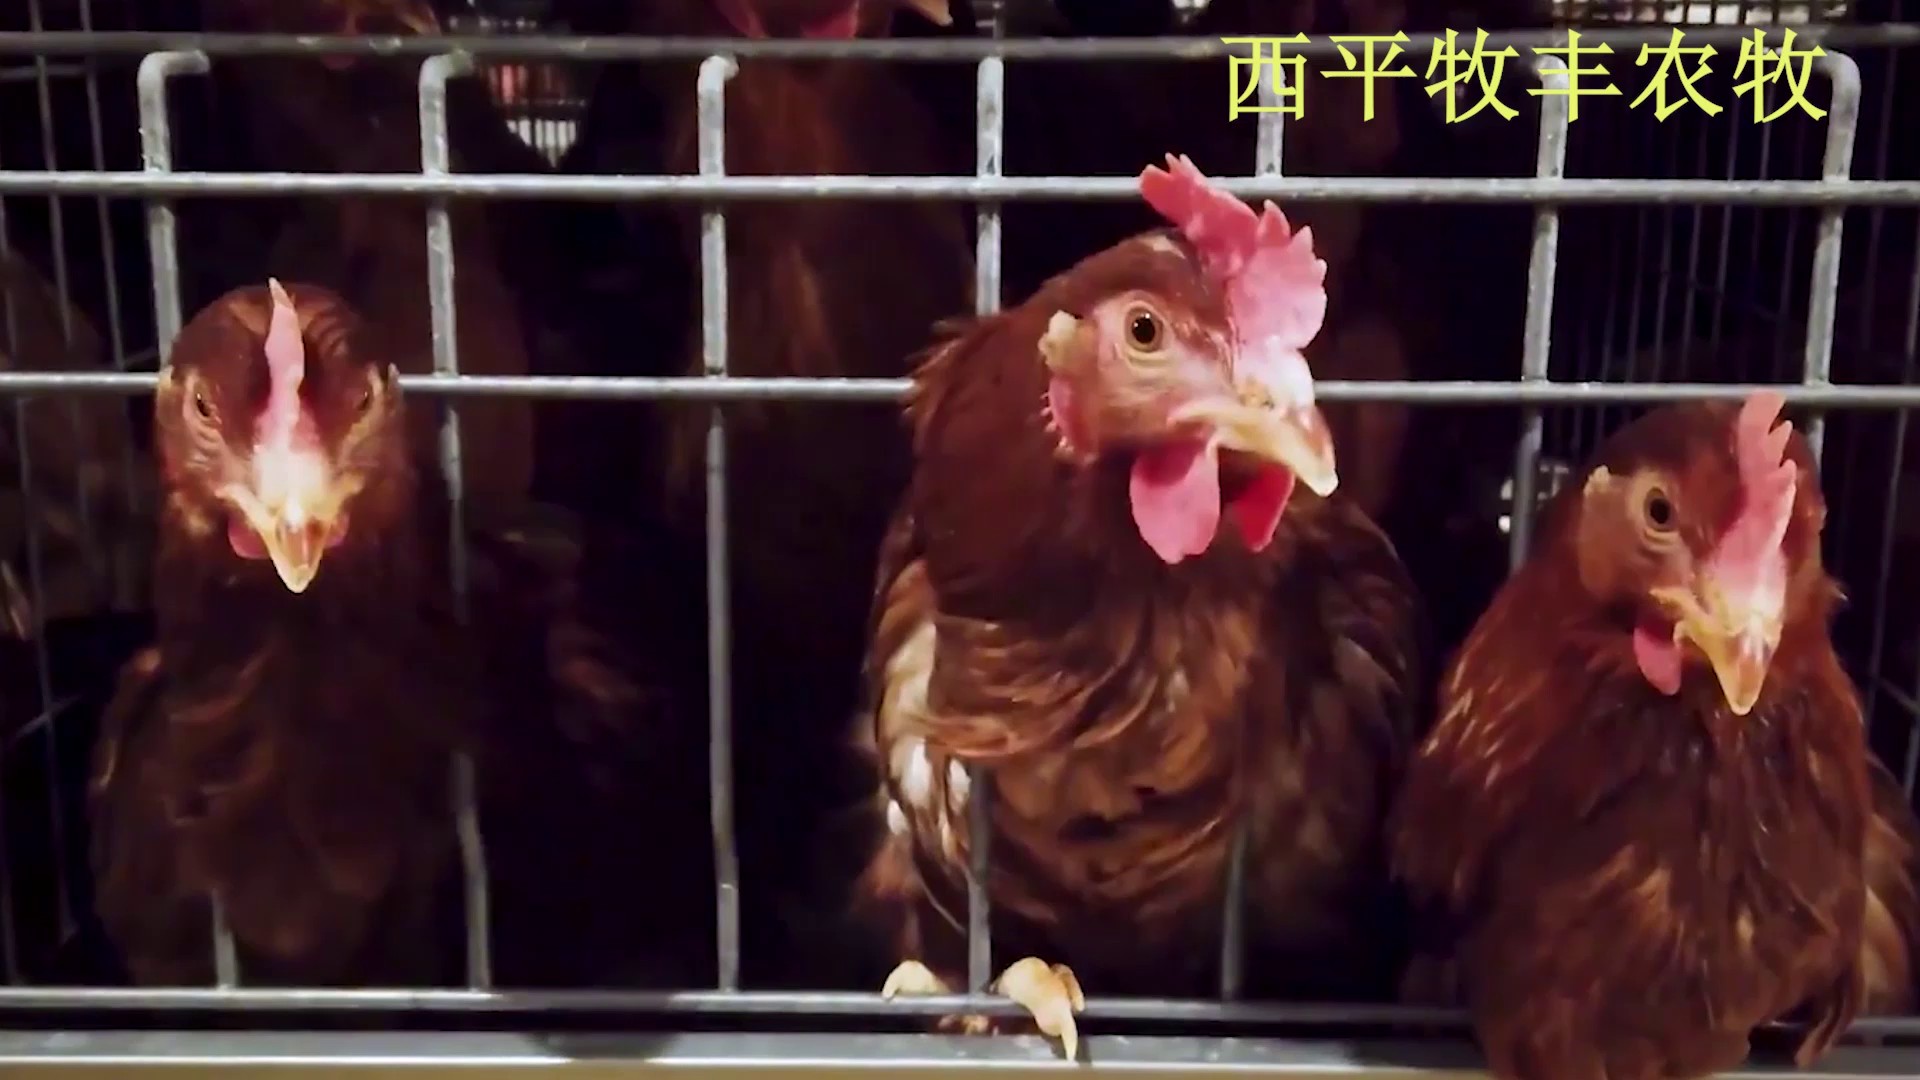 广东现代化养鸡取暖设备,养鸡